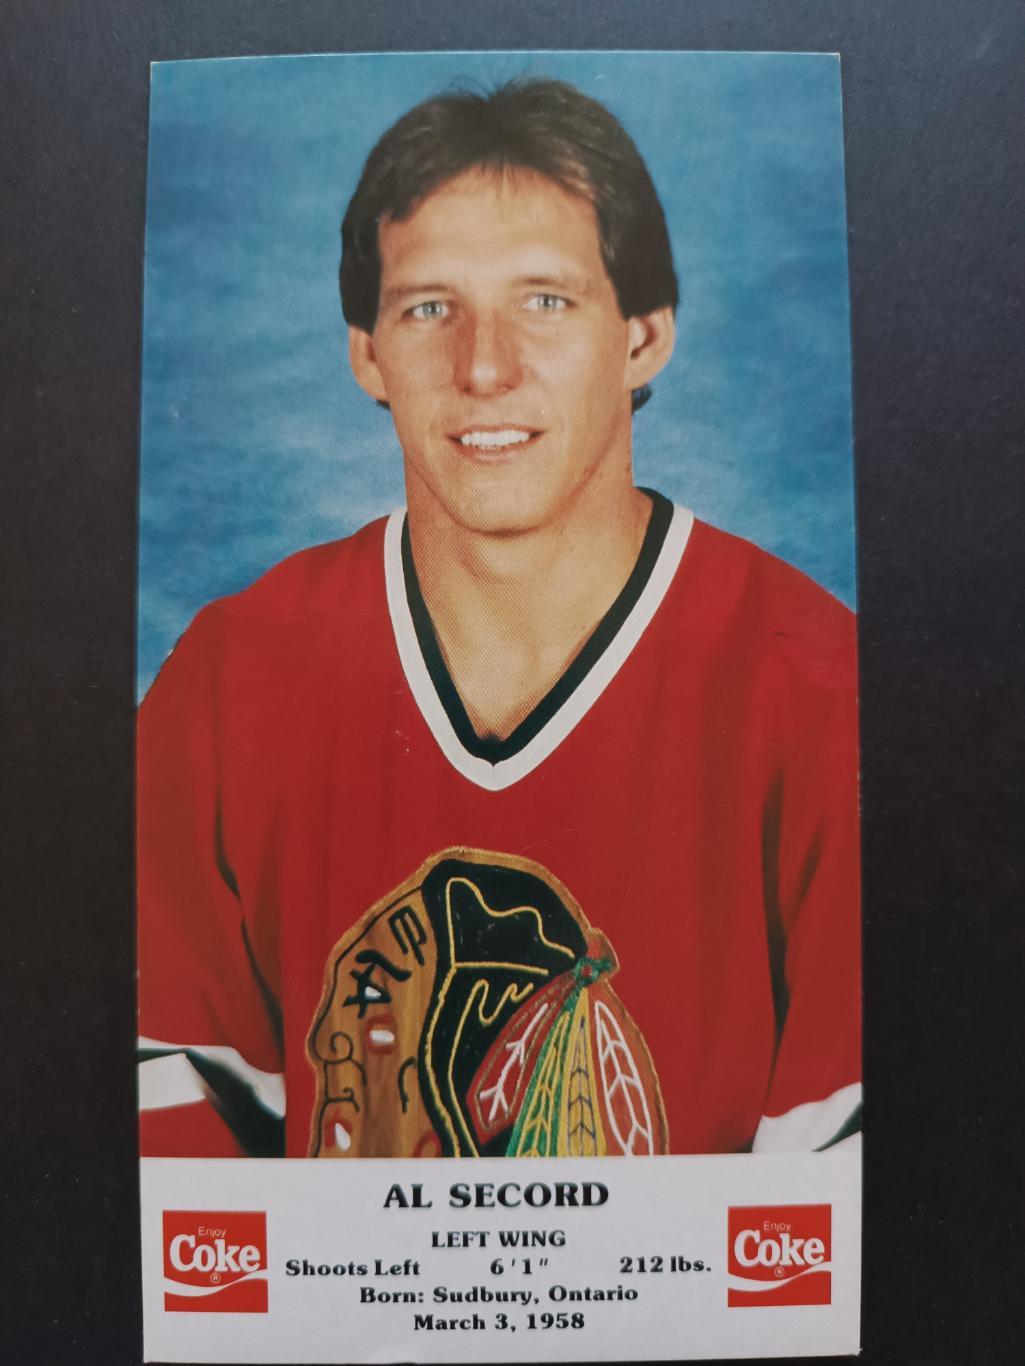 ХОККЕЙ ОТКРЫТКА НХЛ КОКА КОЛА 1986-87 NHL POSTCARD COKE AL SECORD CHICAGO